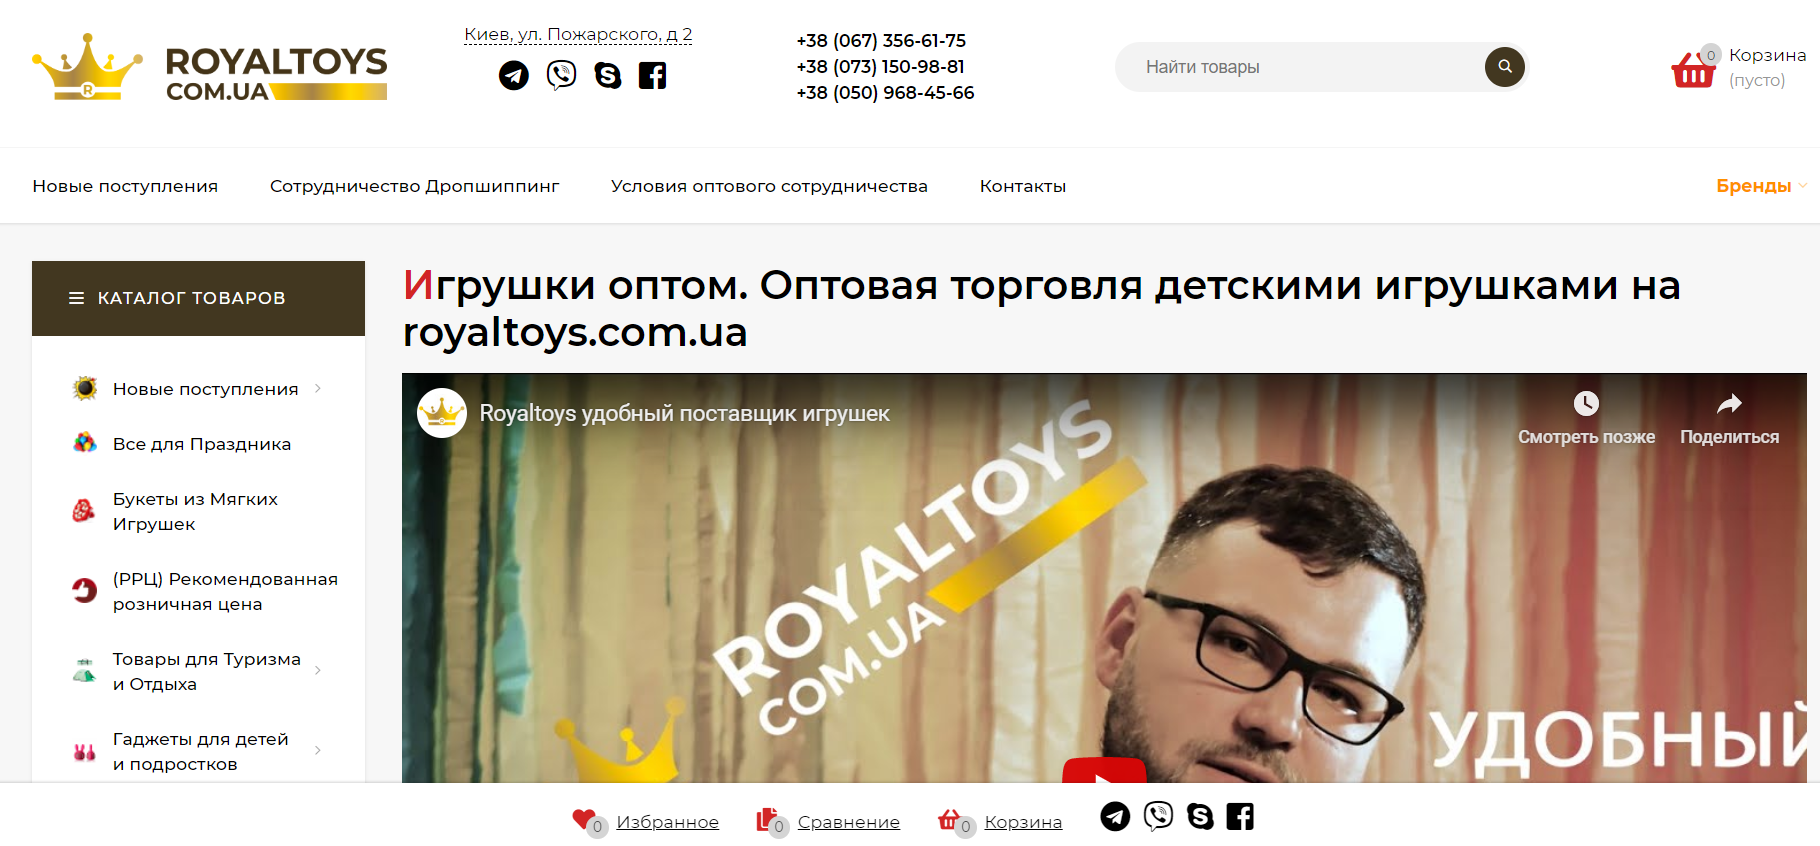 Интернет-магазин royaltoys.com.ua 